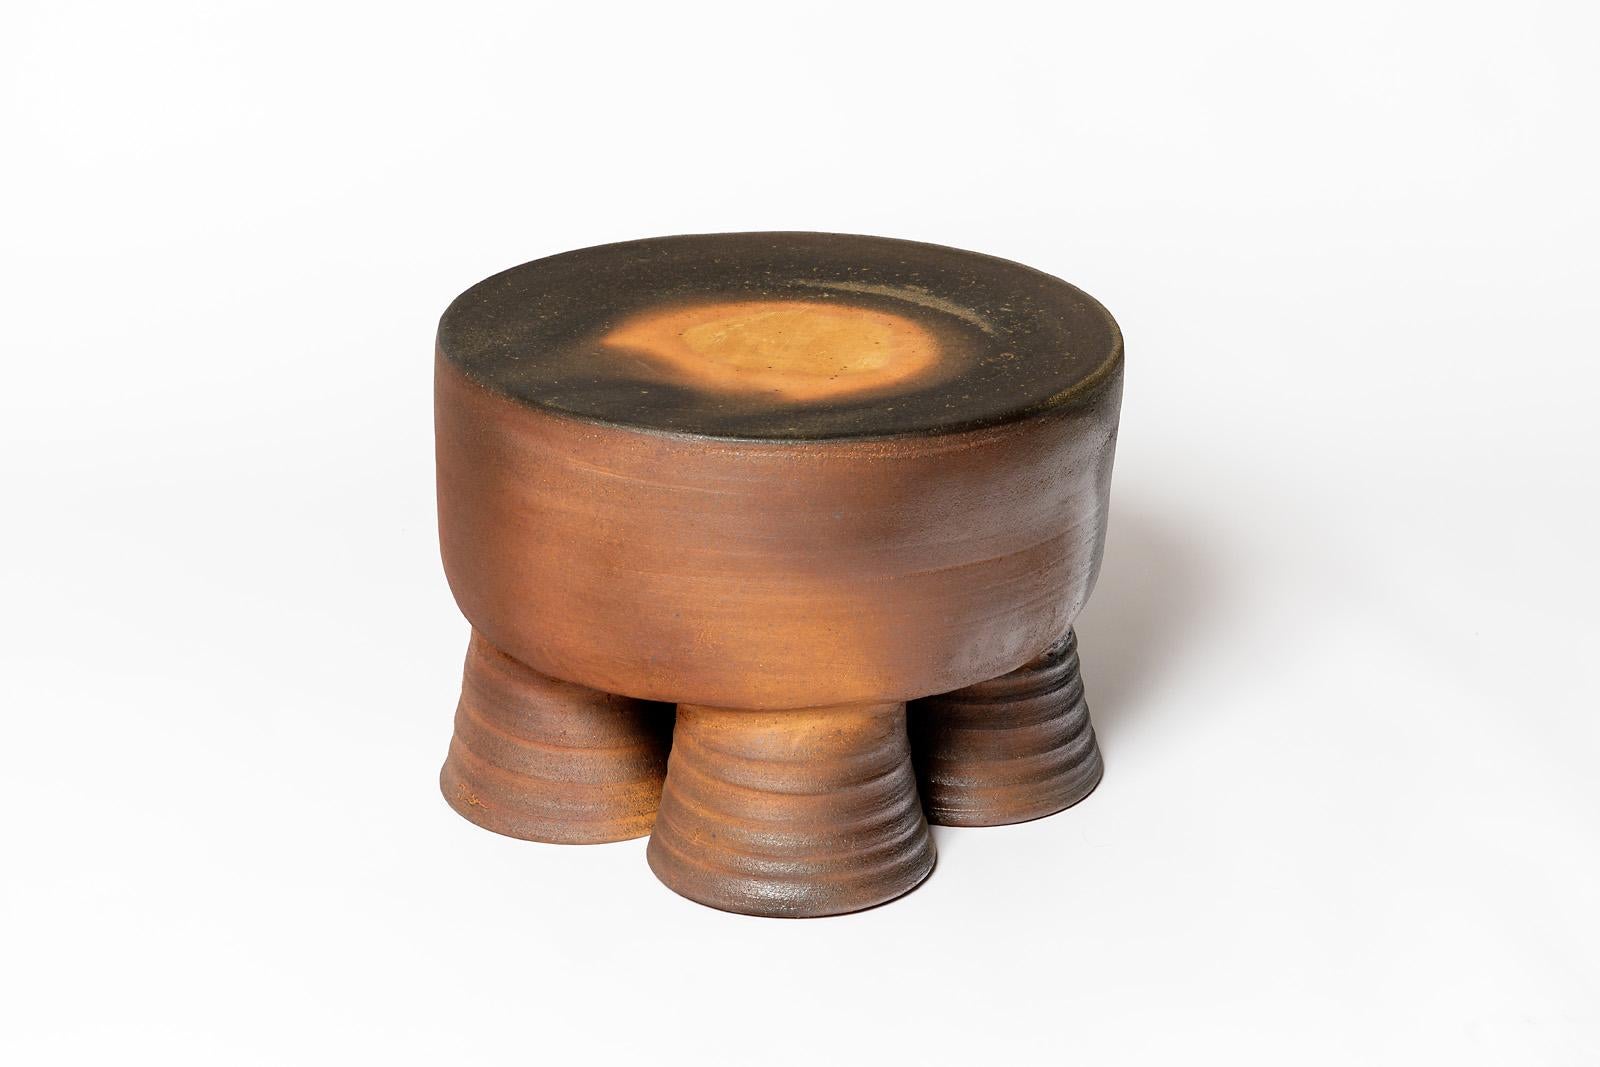 Tabouret ou table basse en céramique cuite au feu de bois par Mia Jensen. Signature de l'artiste sous la base. 2024.
H : 12.2' x 17.3' pouces.